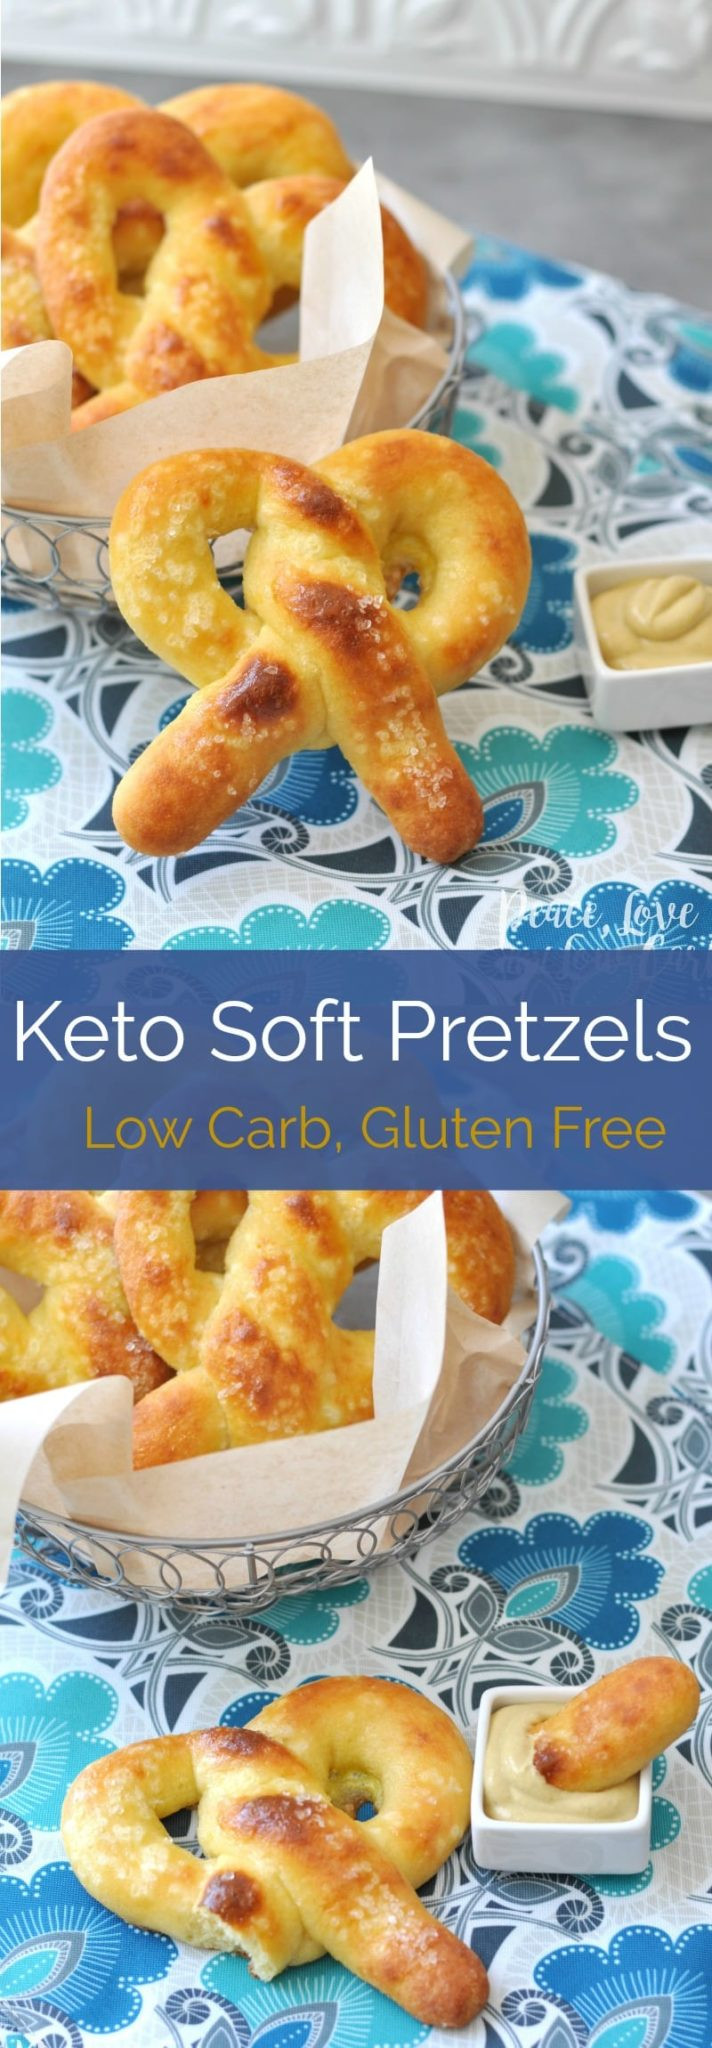 Low Carb Pretzels
 Gluten Free Keto Soft Pretzels